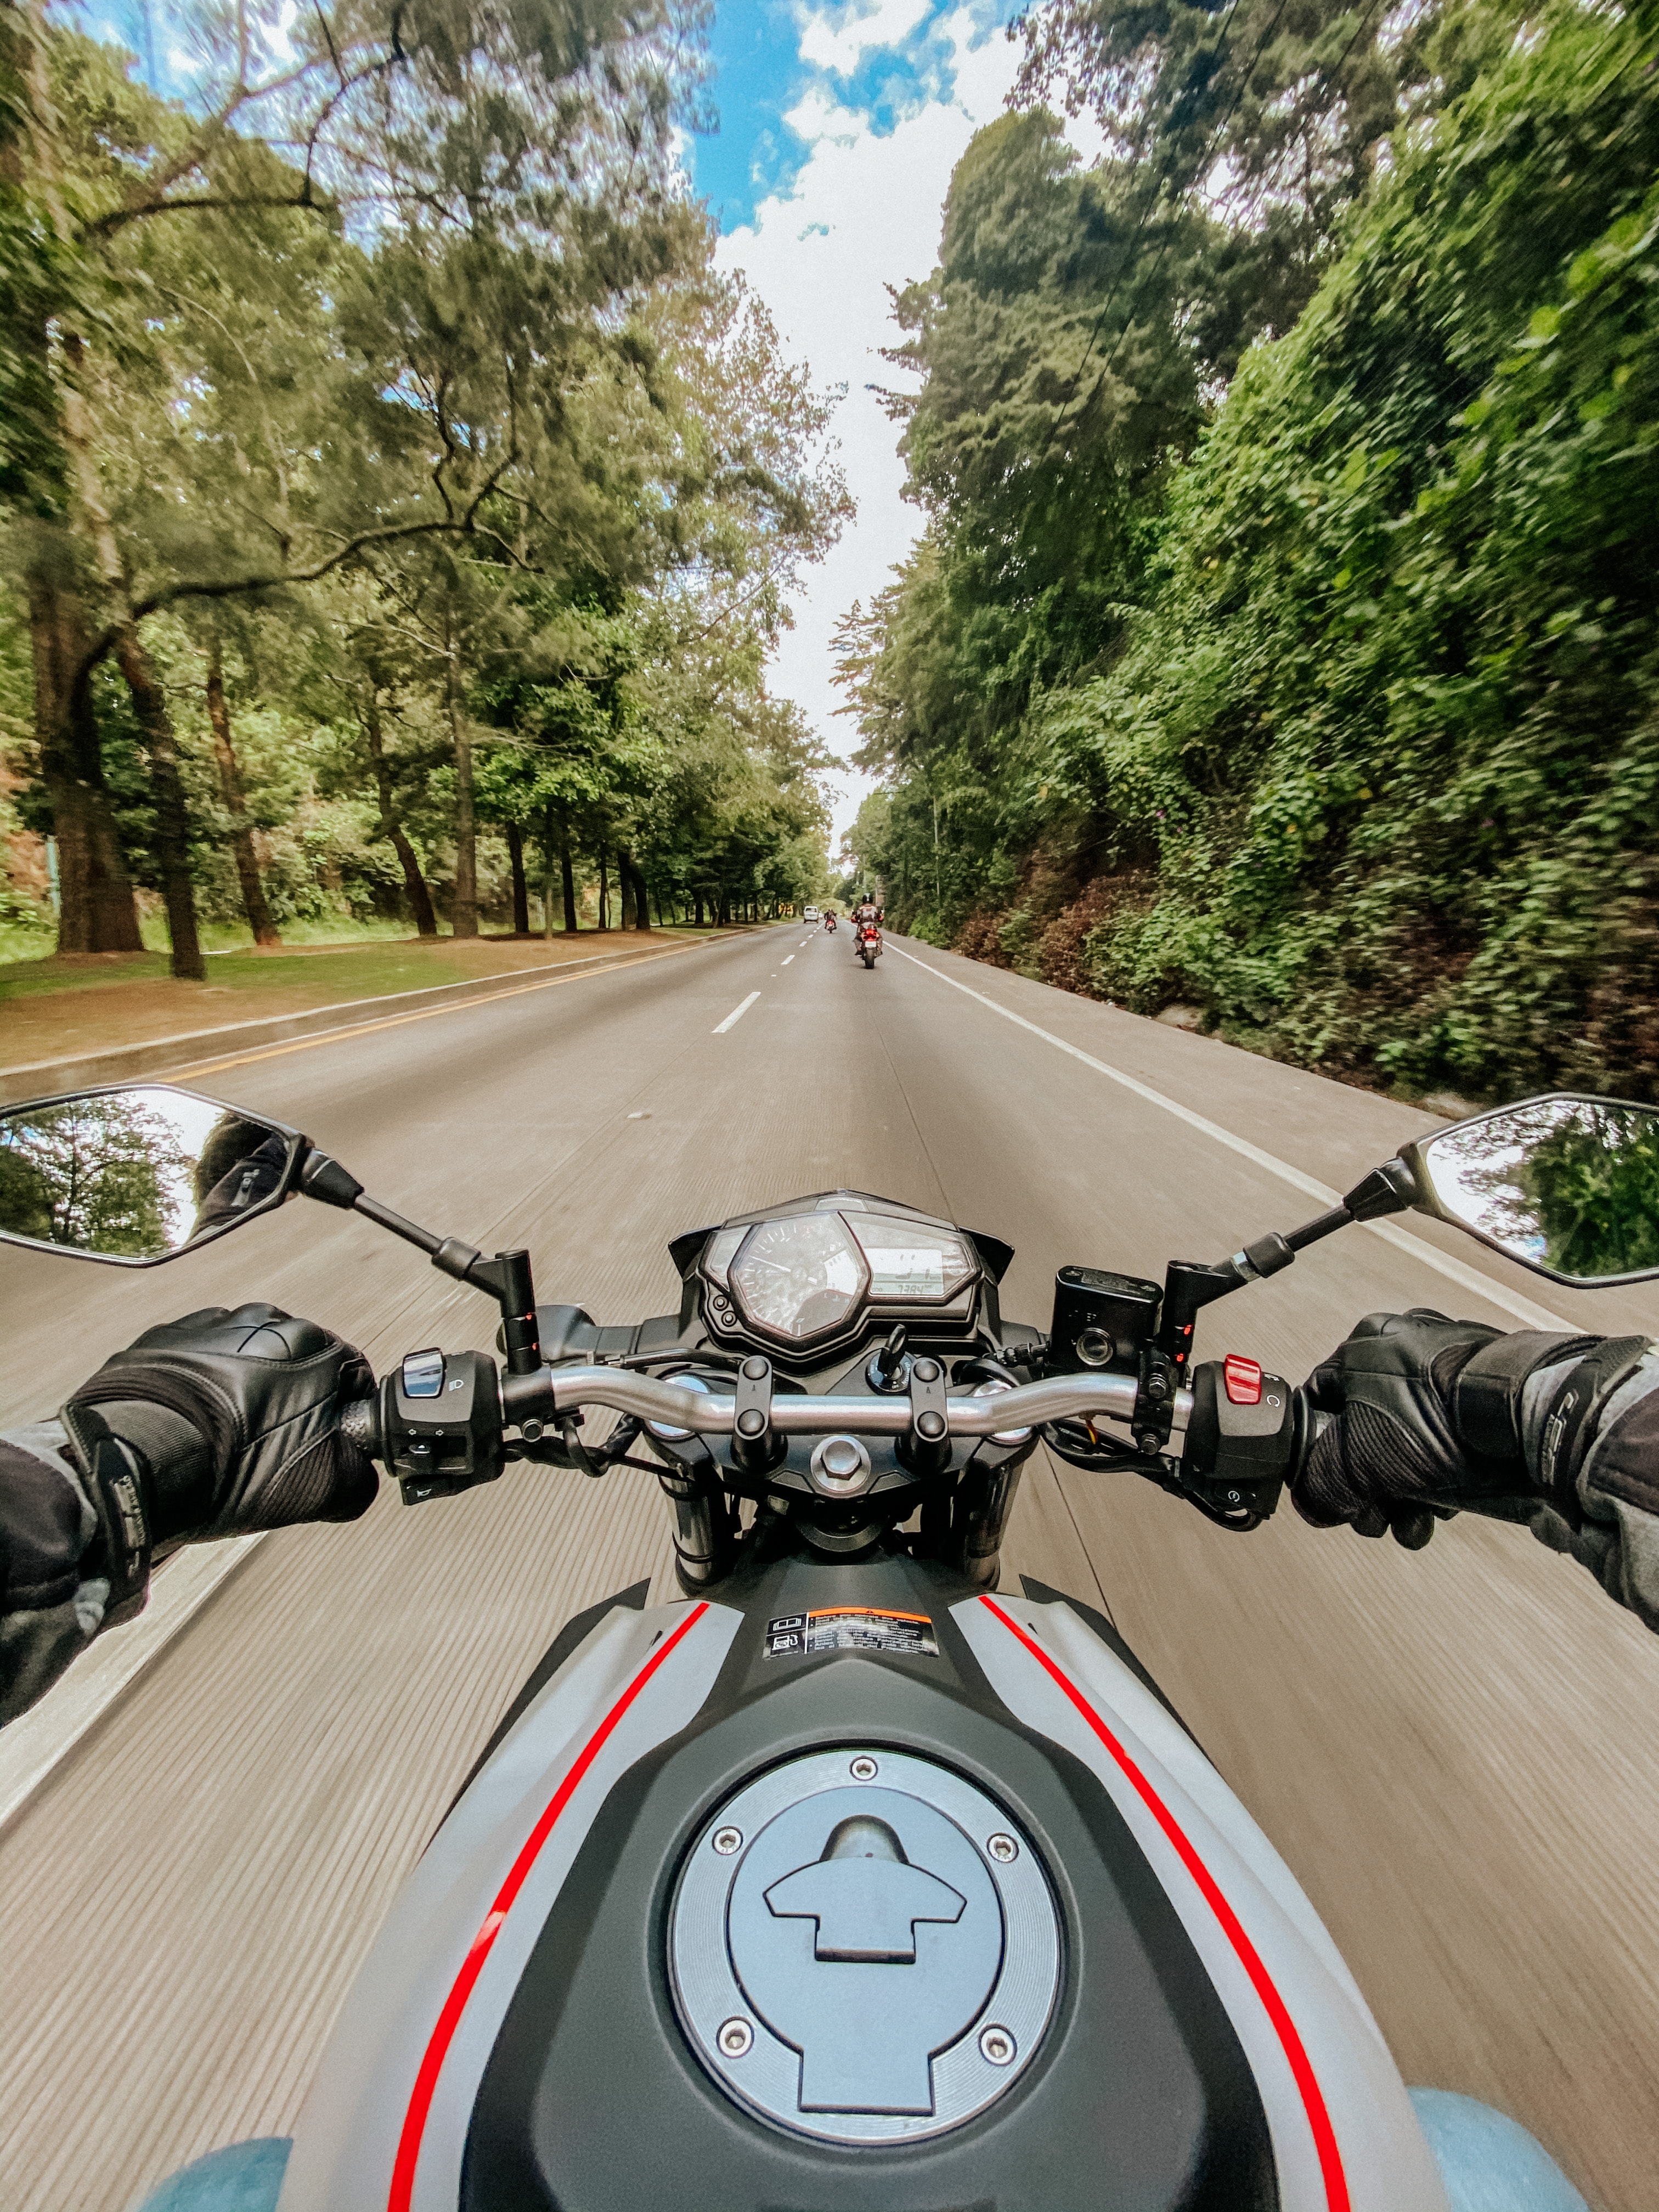 motorcycle, bike, motorcycles, road, speed